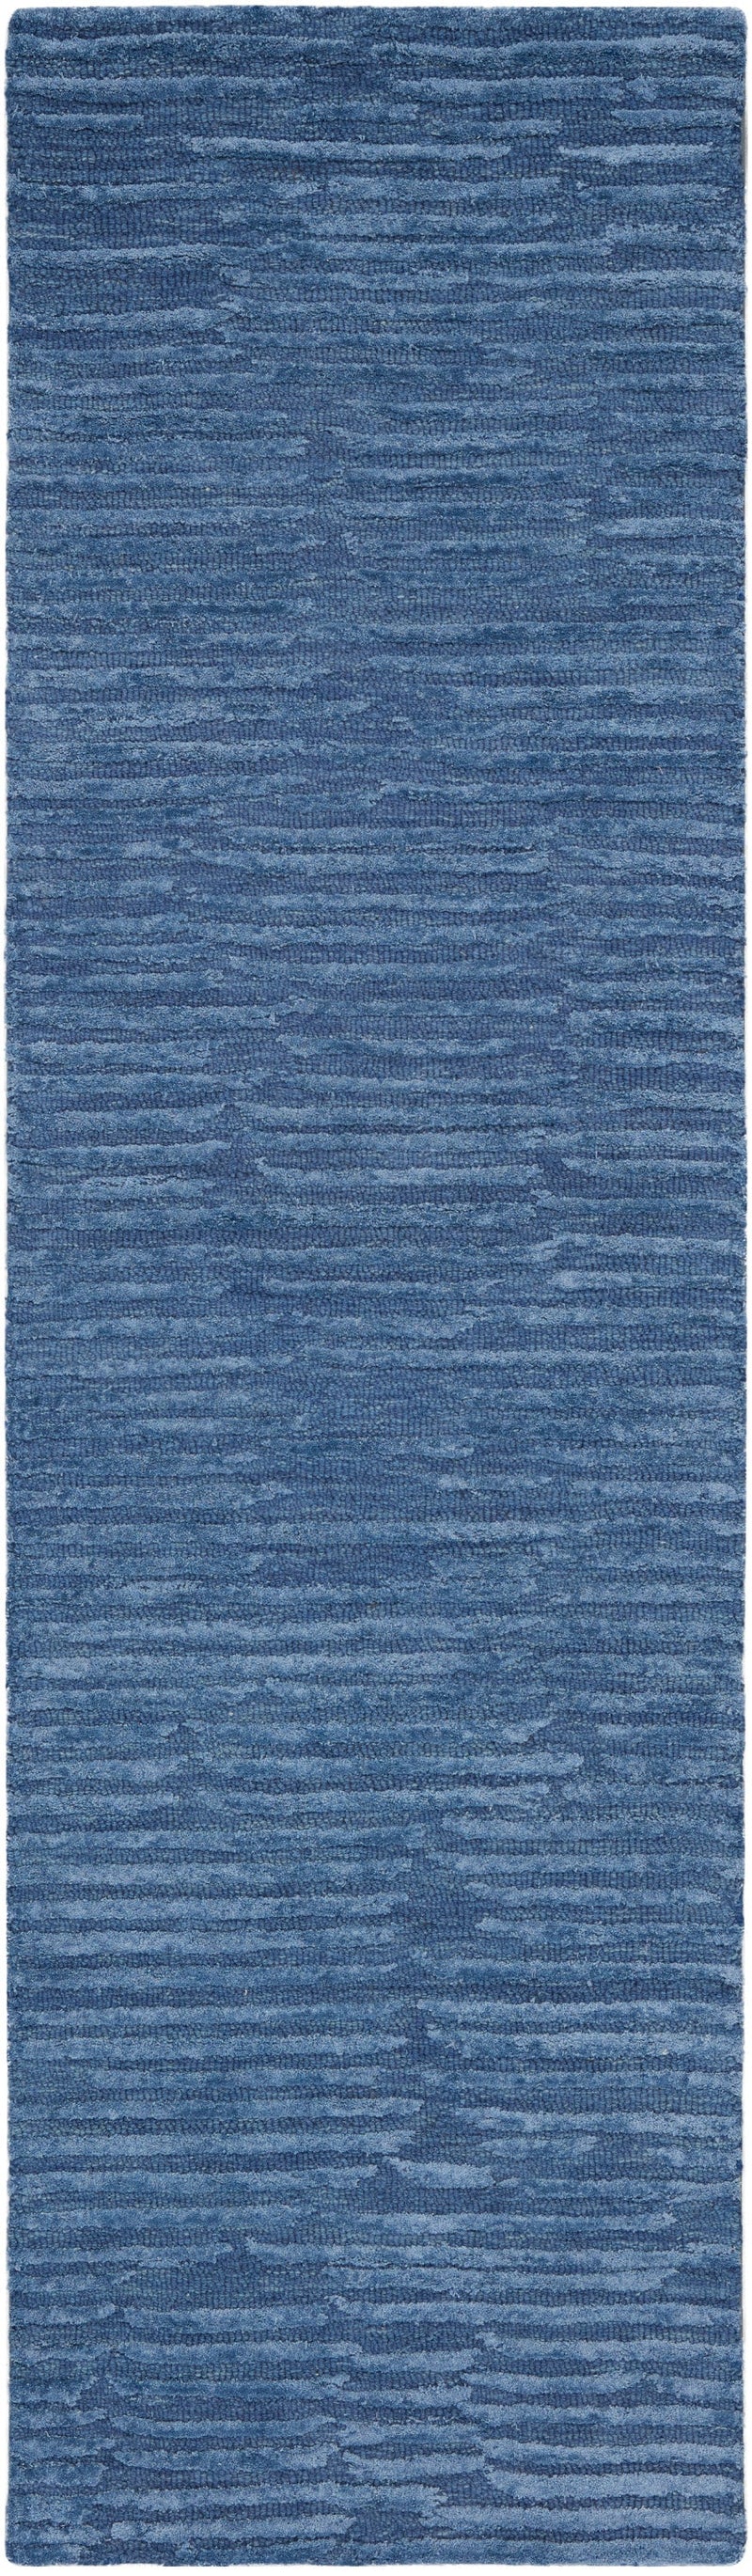 media image for ck010 linear handmade blue rug by nourison 99446880116 redo 2 279